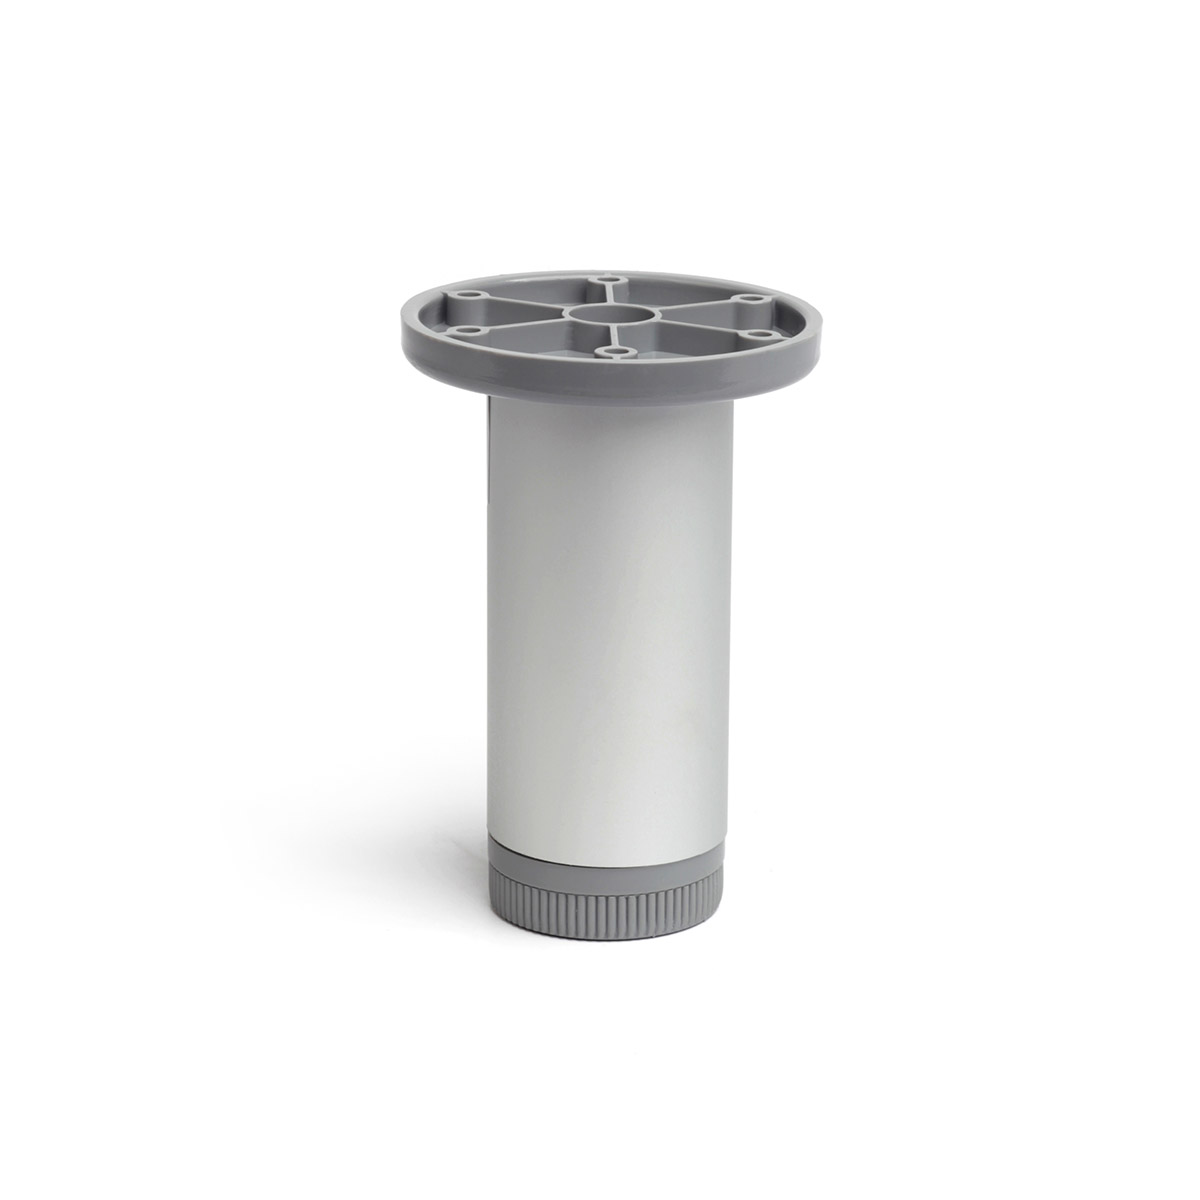 Pied cylindrique réglable en aluminium d'une hauteur de 100 mm et finition anodisé mat. Dimensions: 40x40x100 mm